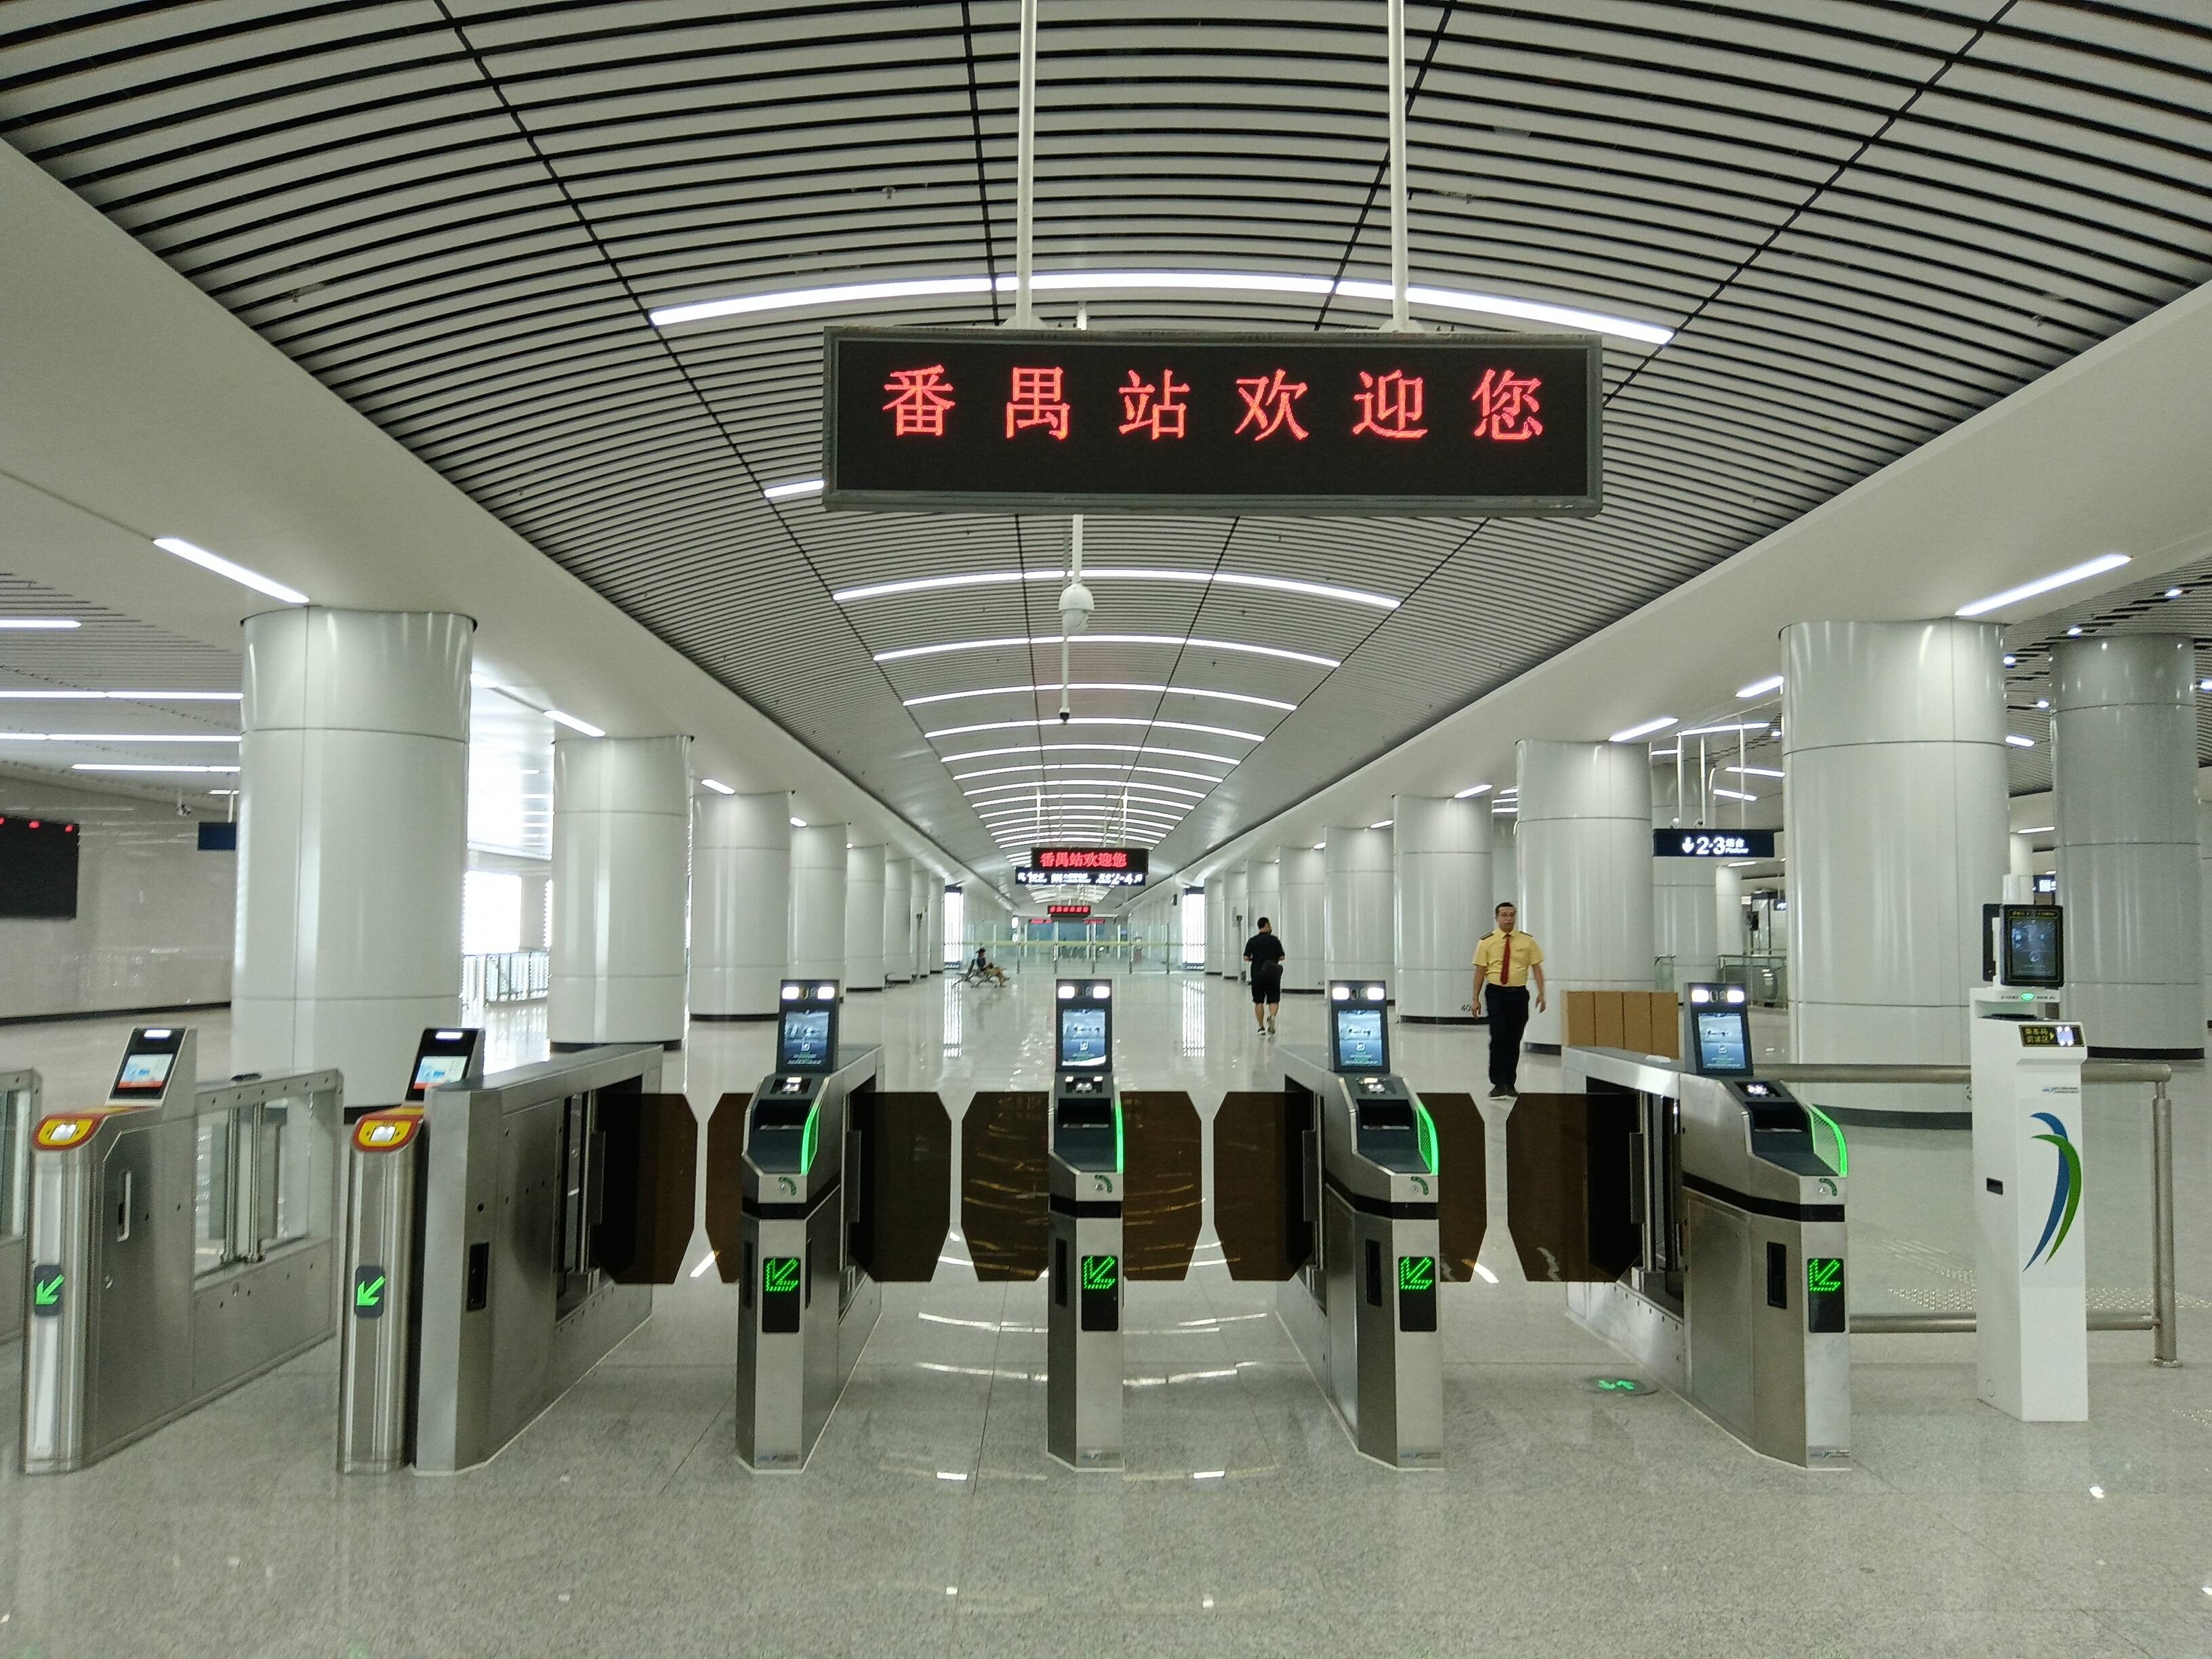 5月14日上午,广州地铁集团面向媒体开放广佛南环试乘